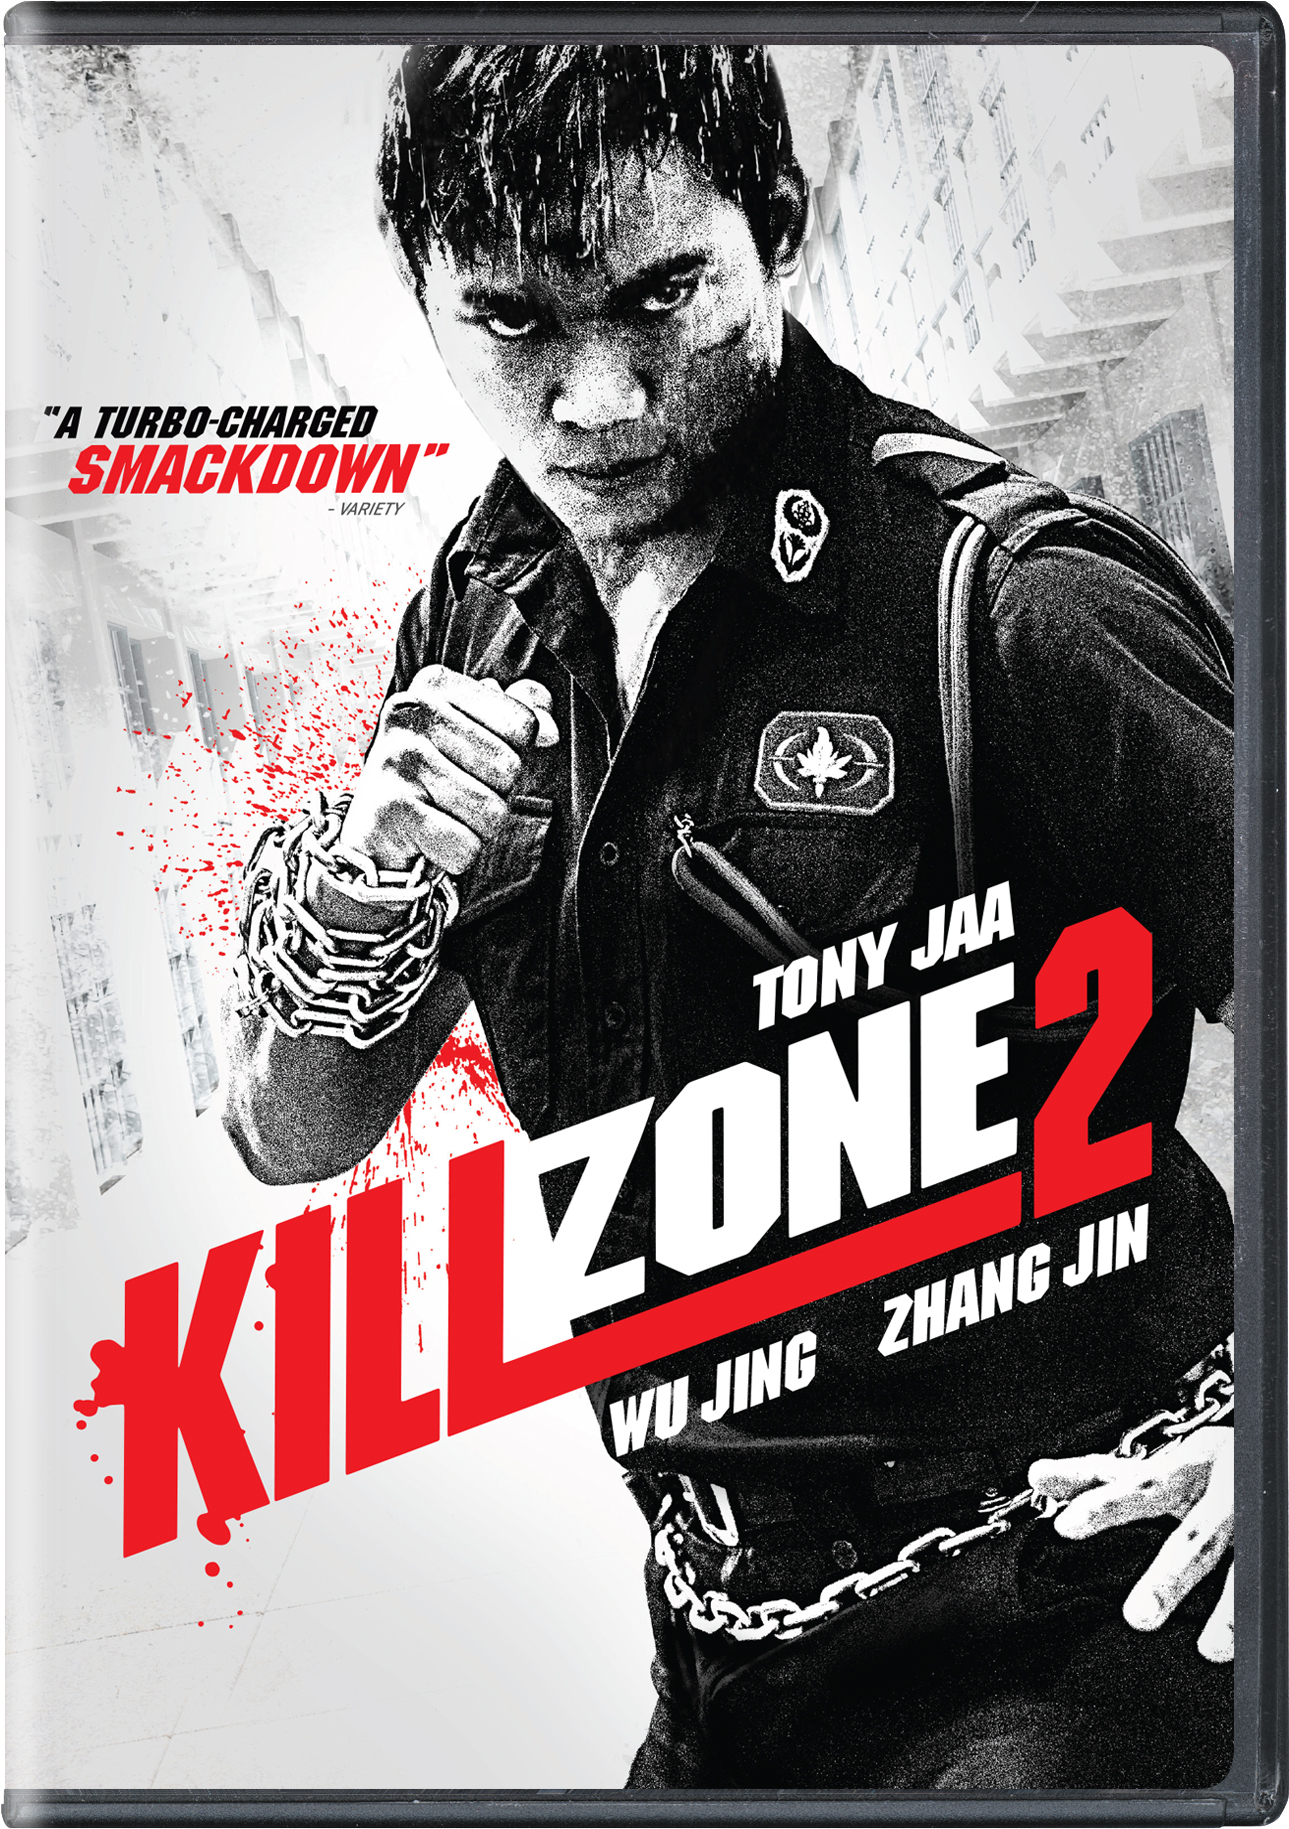 Kill Zone - S.P.L. - DVD PLANET STORE